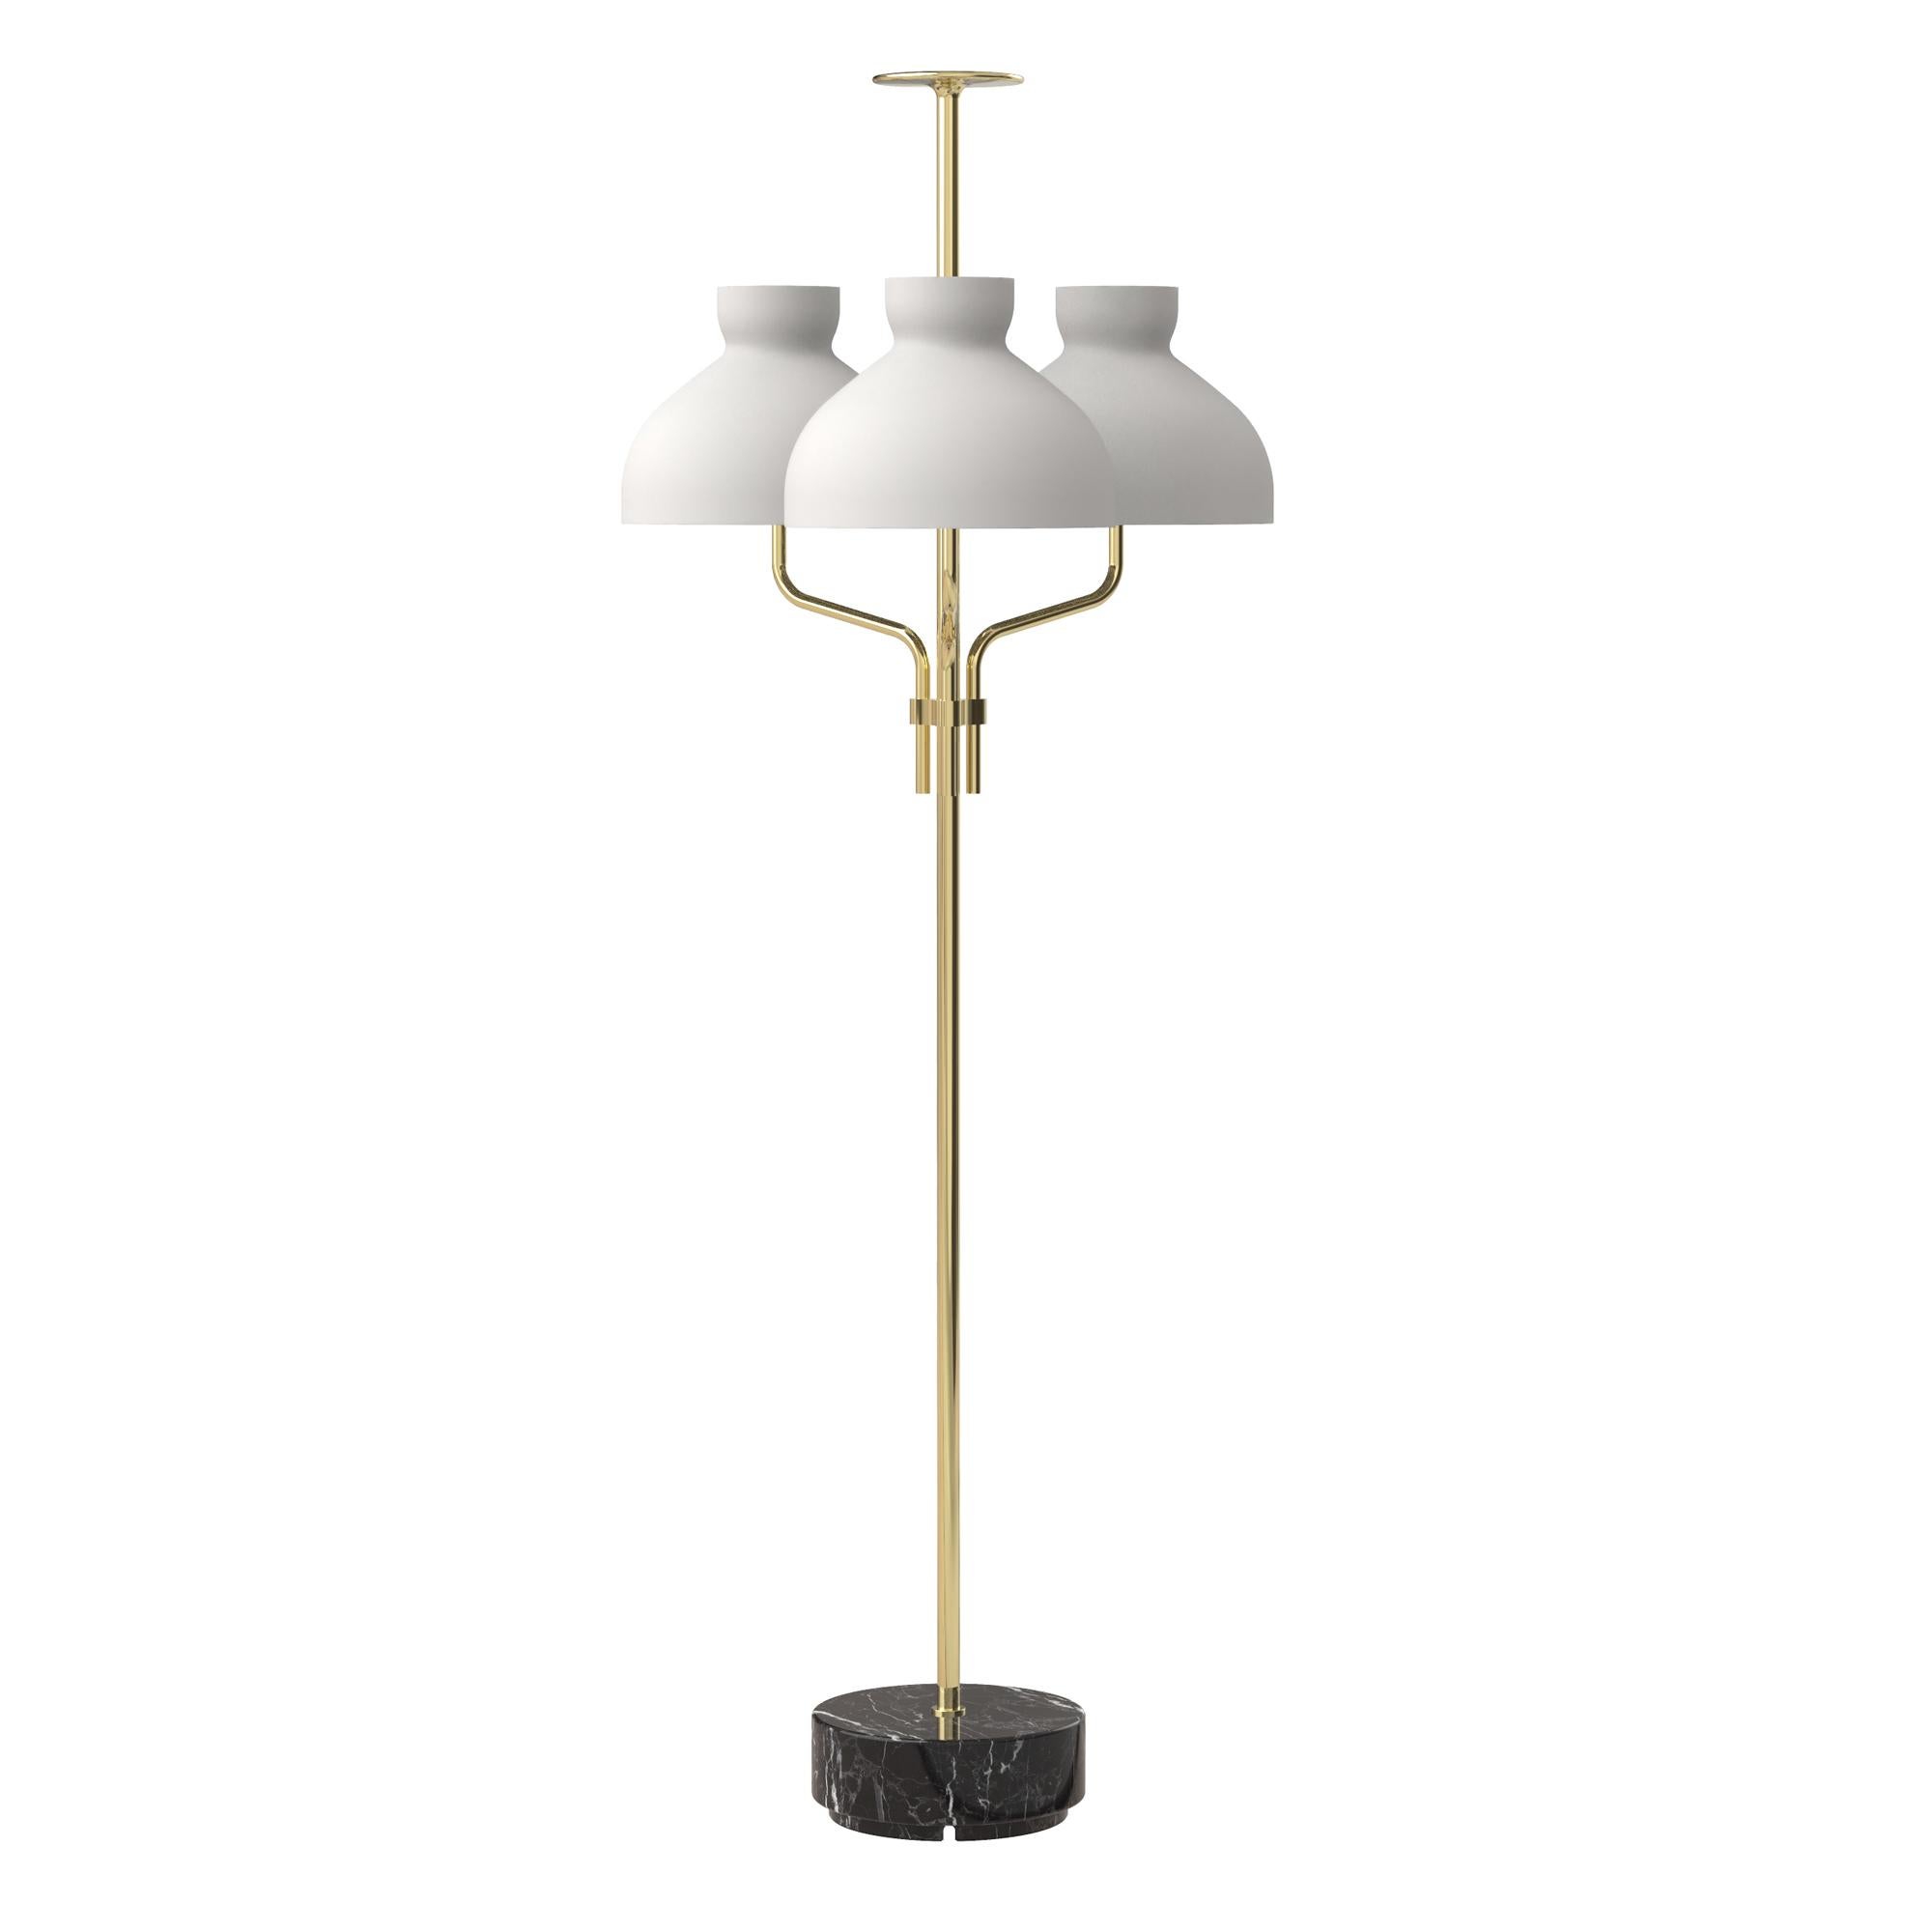 Italian Ignazio Gardella 'Arenzano Tre Fiamme' Floor Lamp in Black Marble and Brass For Sale